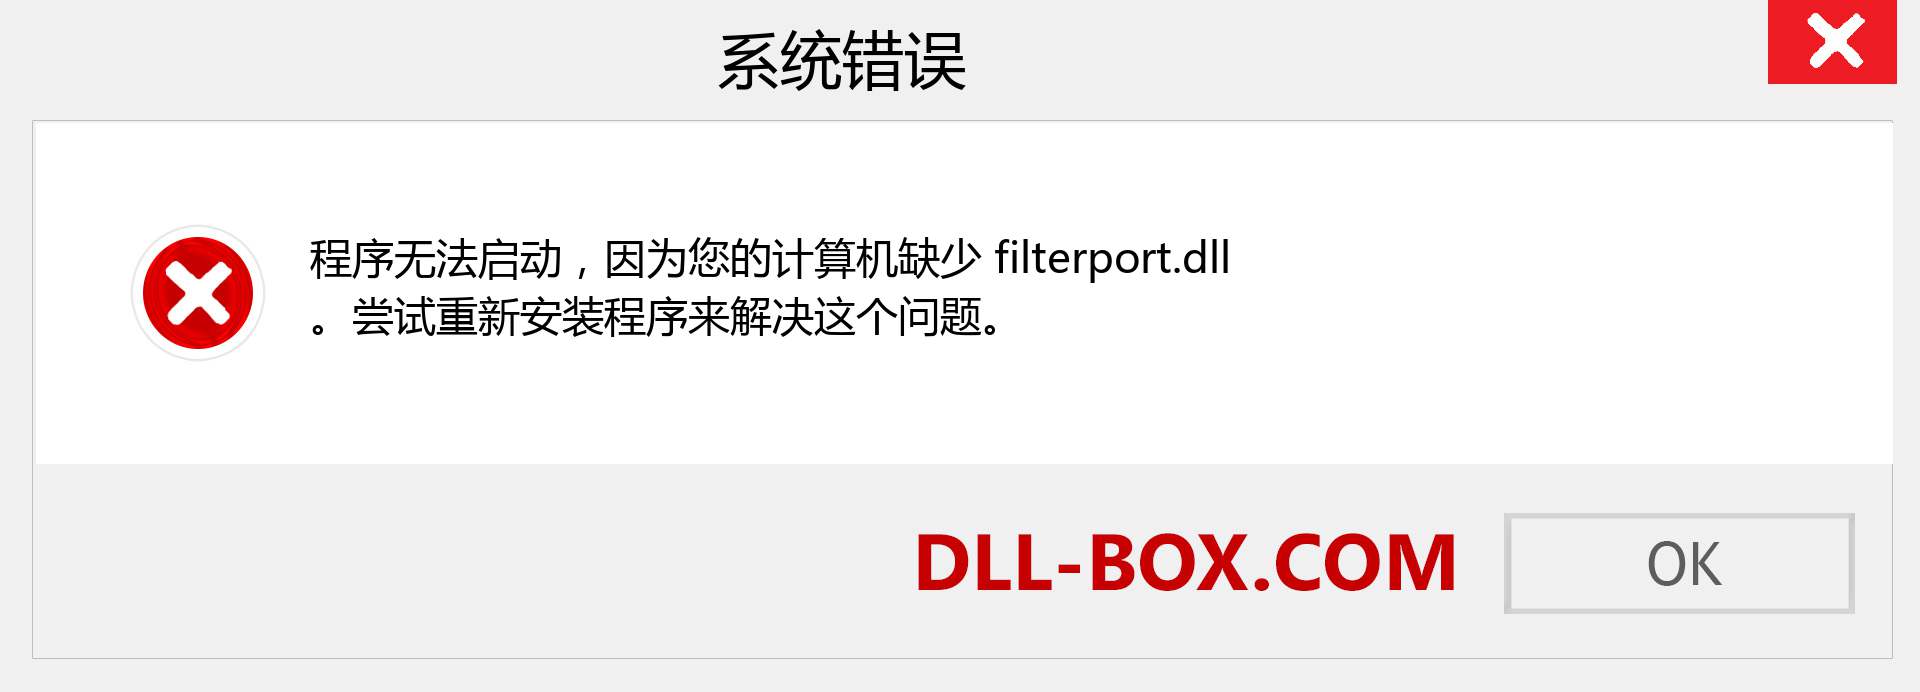 filterport.dll 文件丢失？。 适用于 Windows 7、8、10 的下载 - 修复 Windows、照片、图像上的 filterport dll 丢失错误